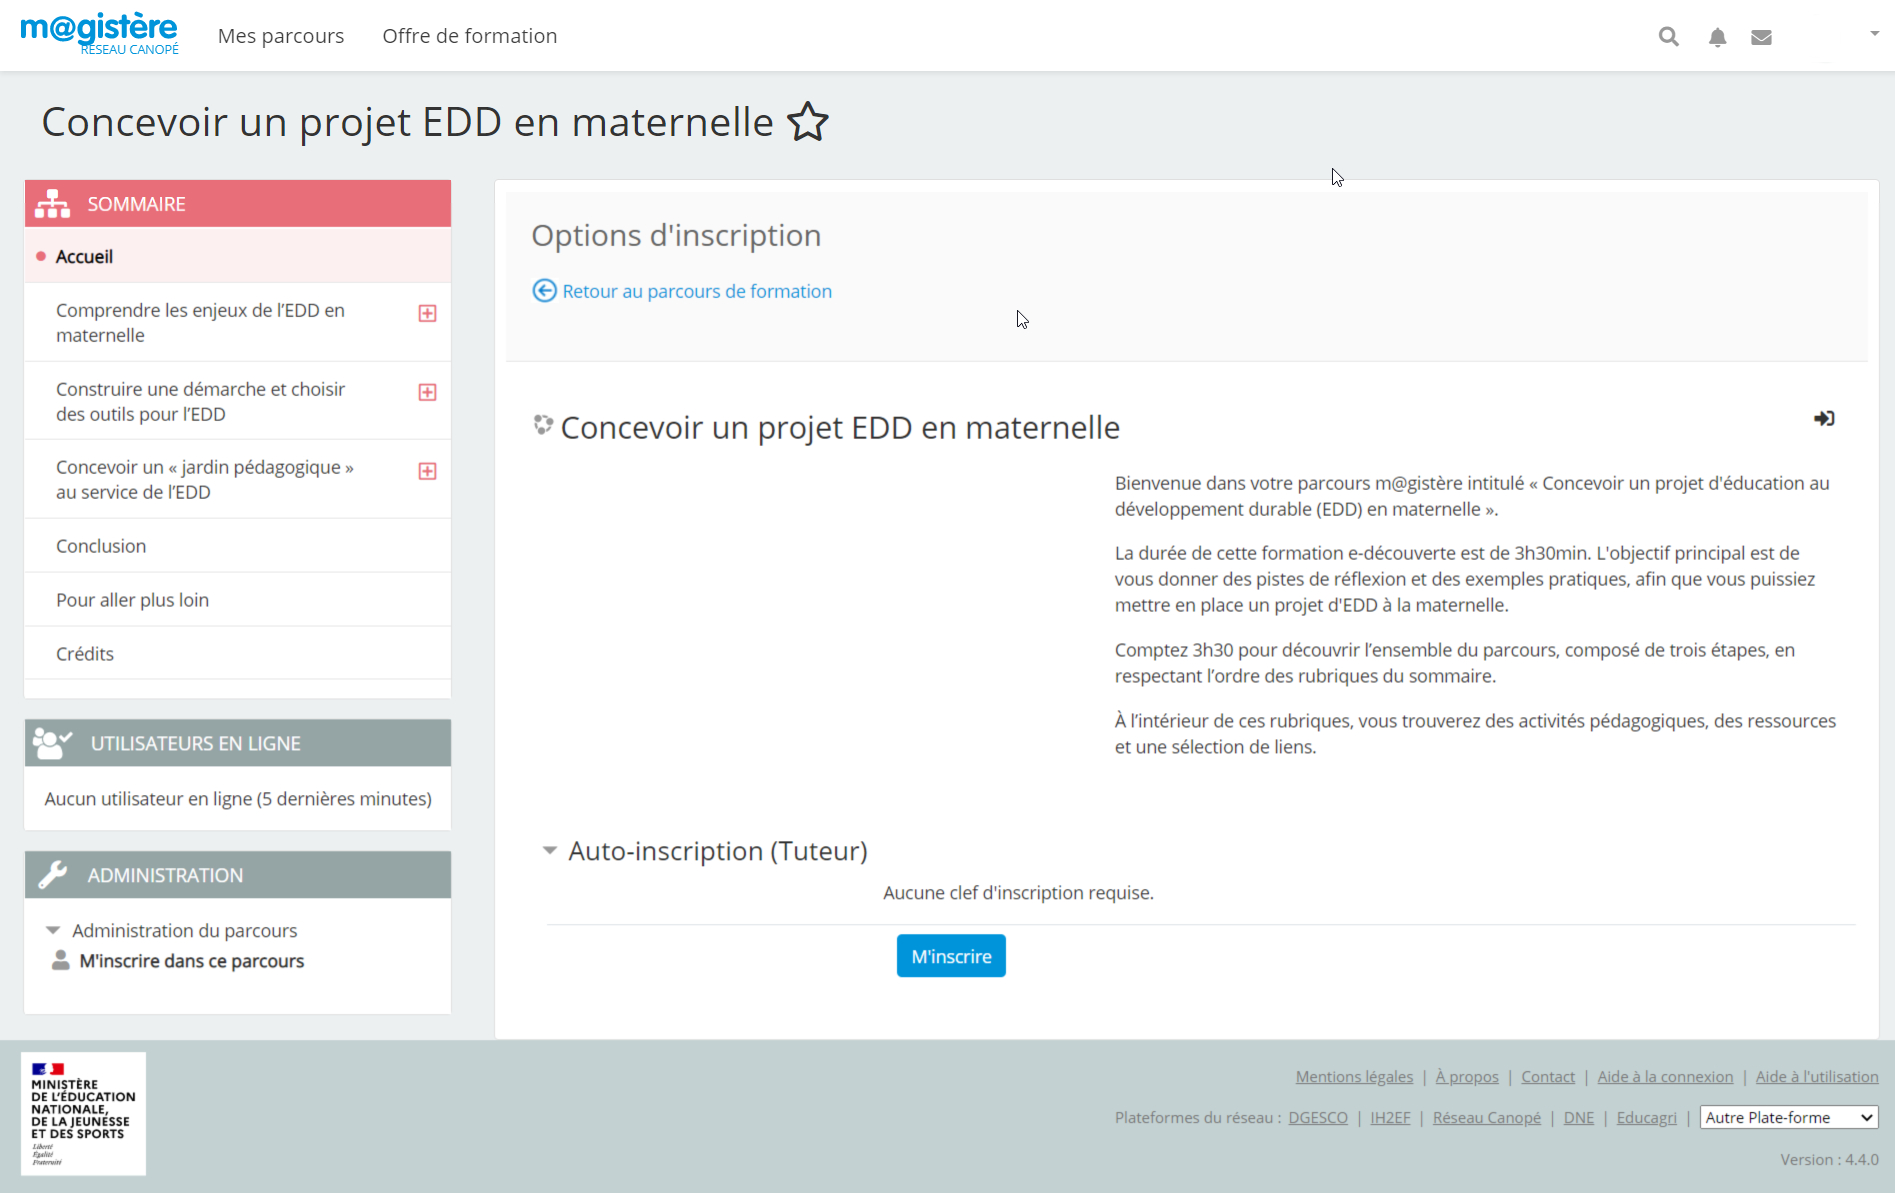 Concevoir un projet EDD en maternelle - Parcours M@gistère